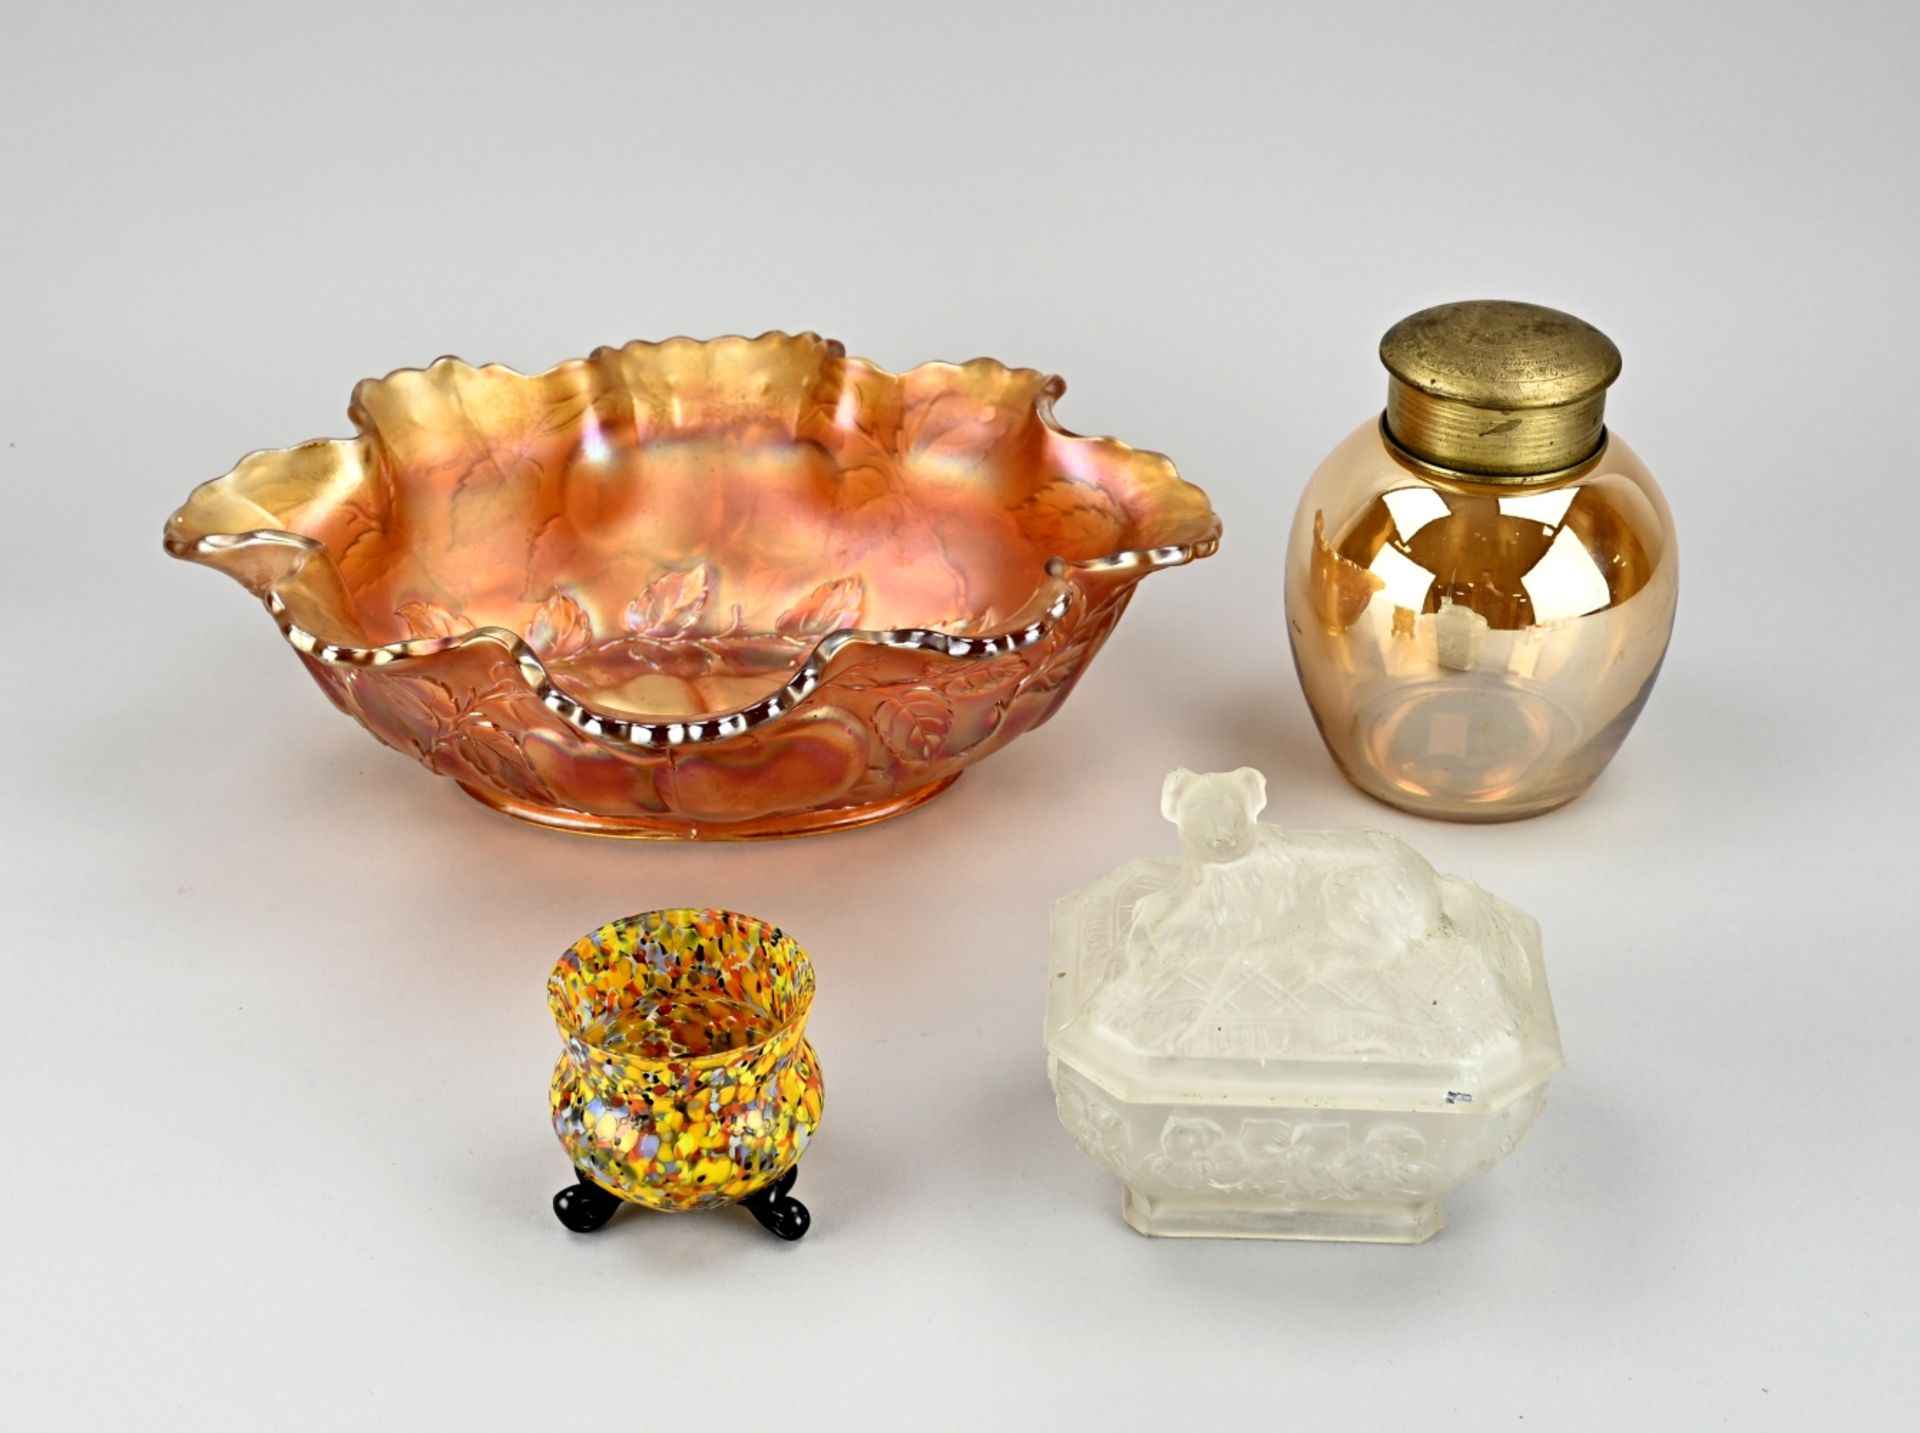 Four pieces of antique glassware